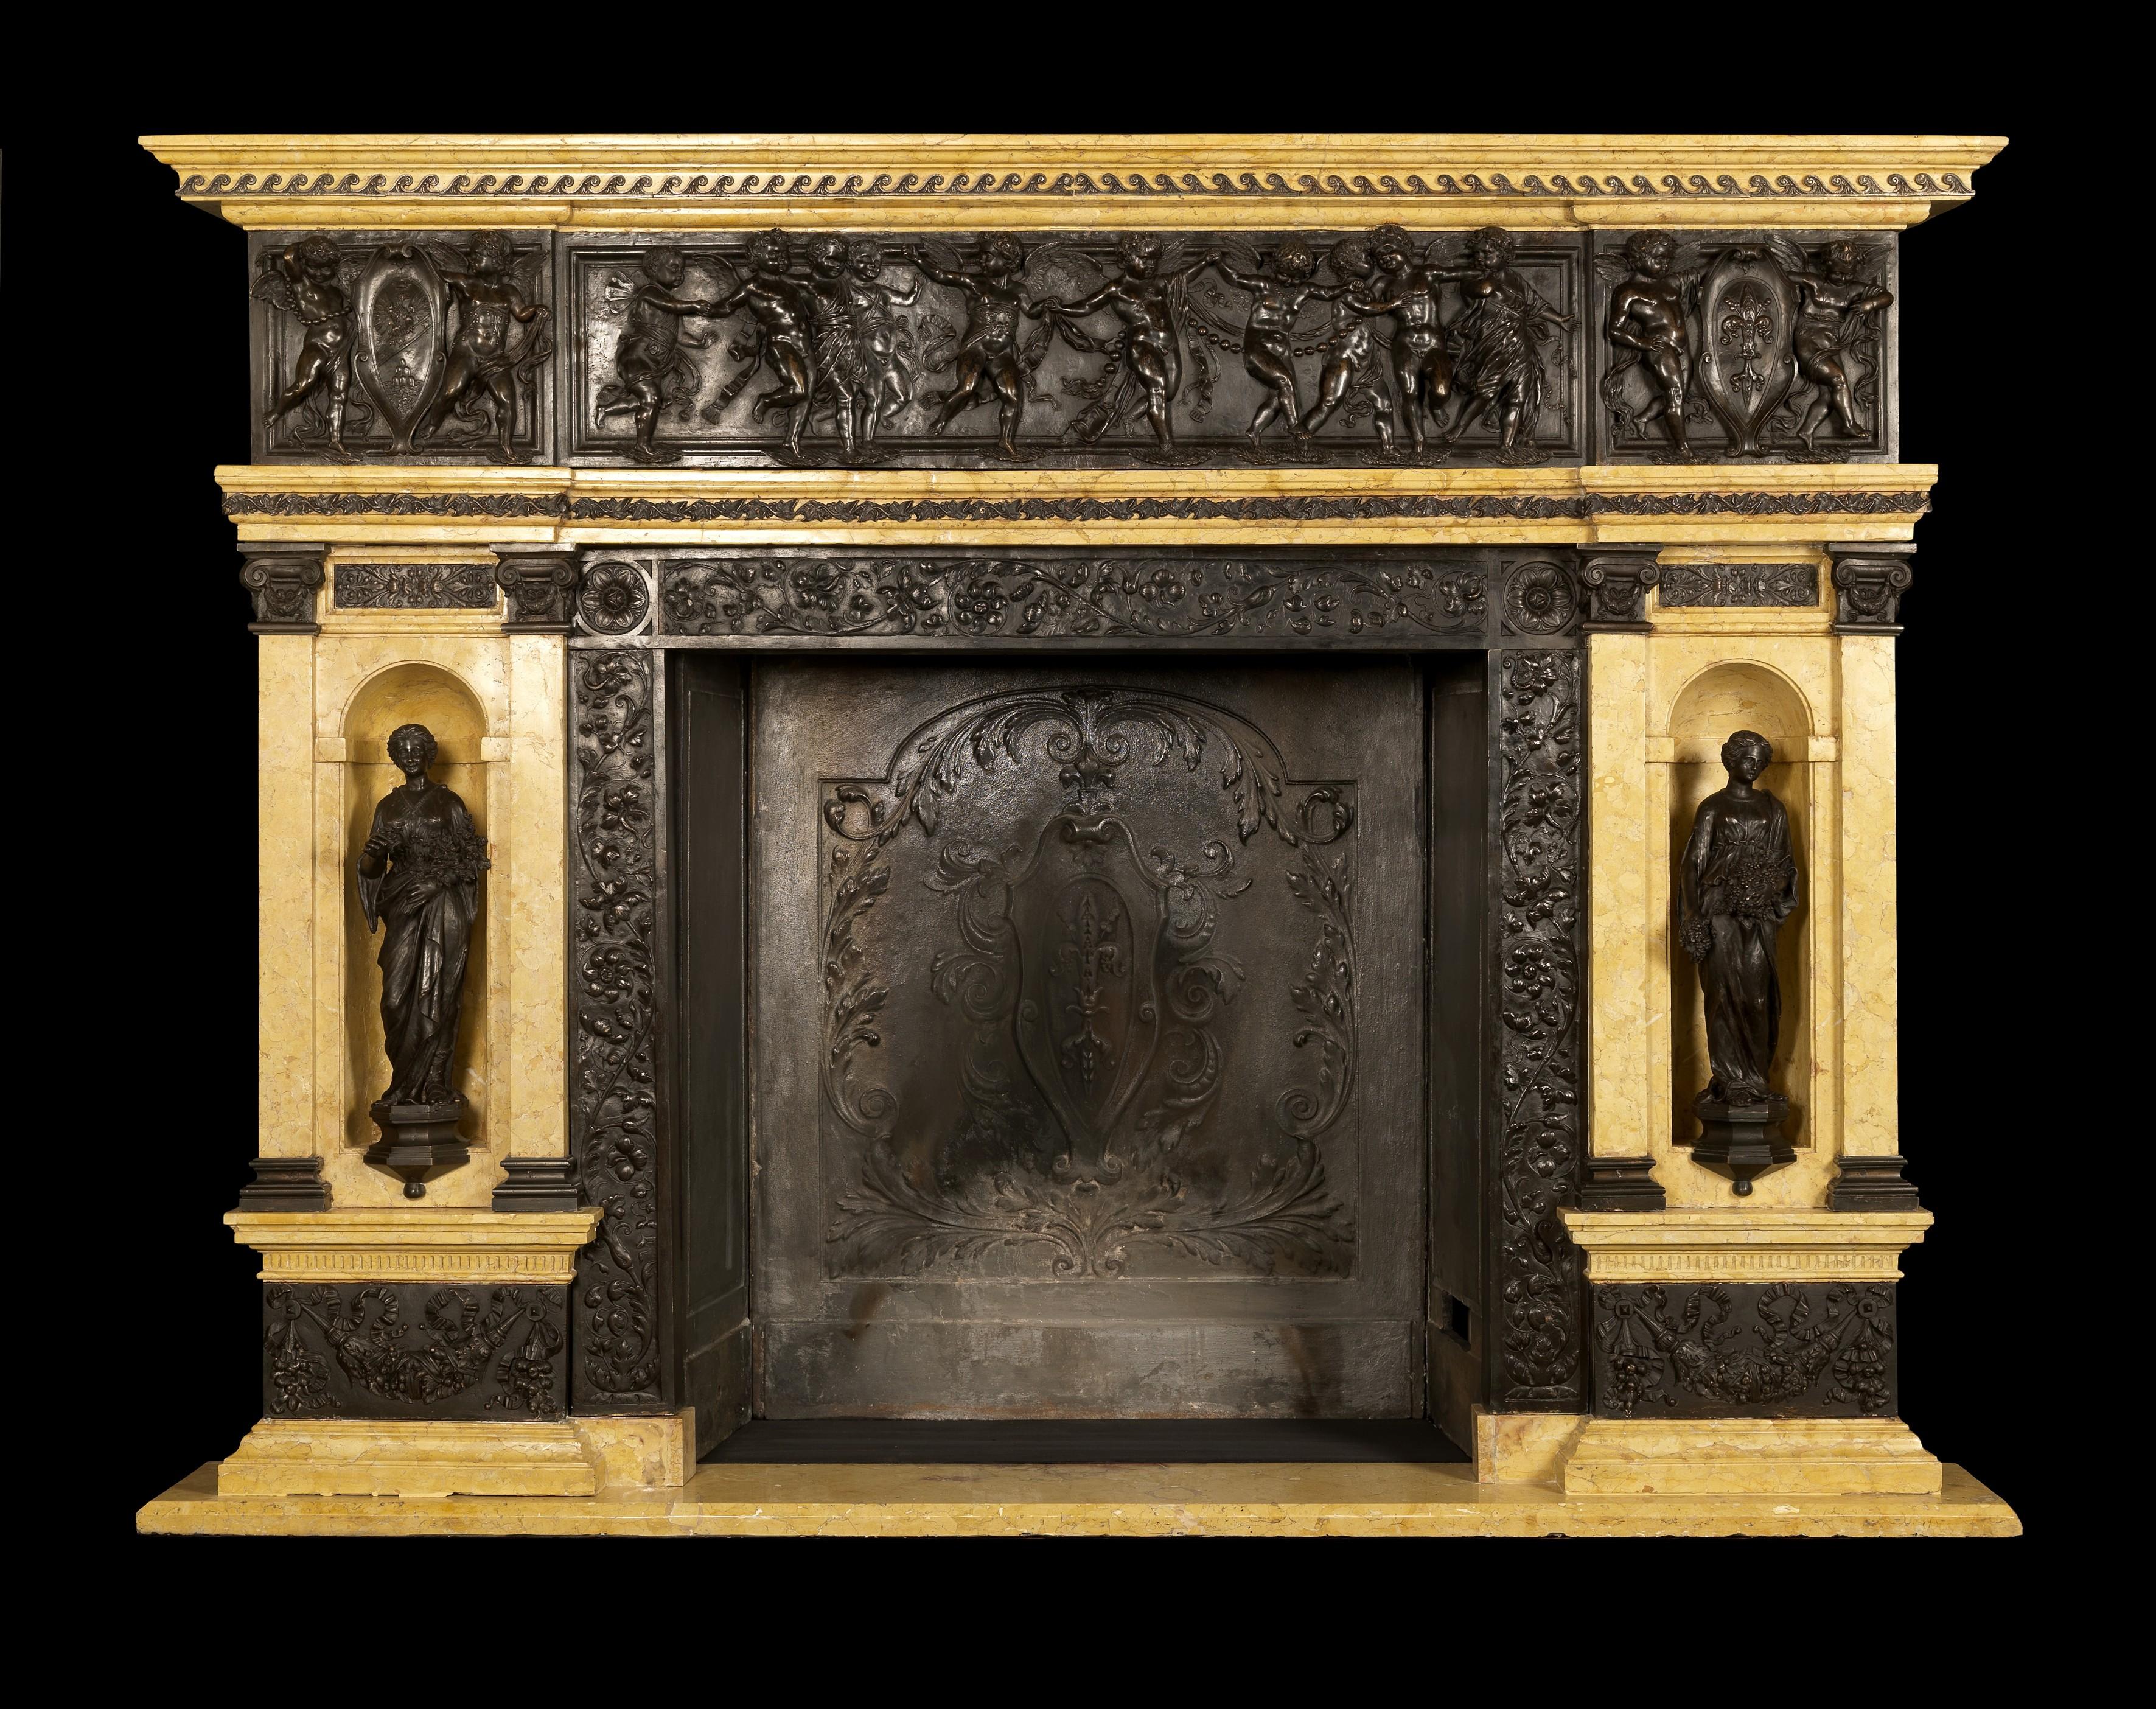 Ein sehr bedeutender Kamin aus patinierter Bronze und Siena-Marmor von palastartigen Proportionen mit fein gegossenen Bronzeplatten und klassischen Figuren, die 